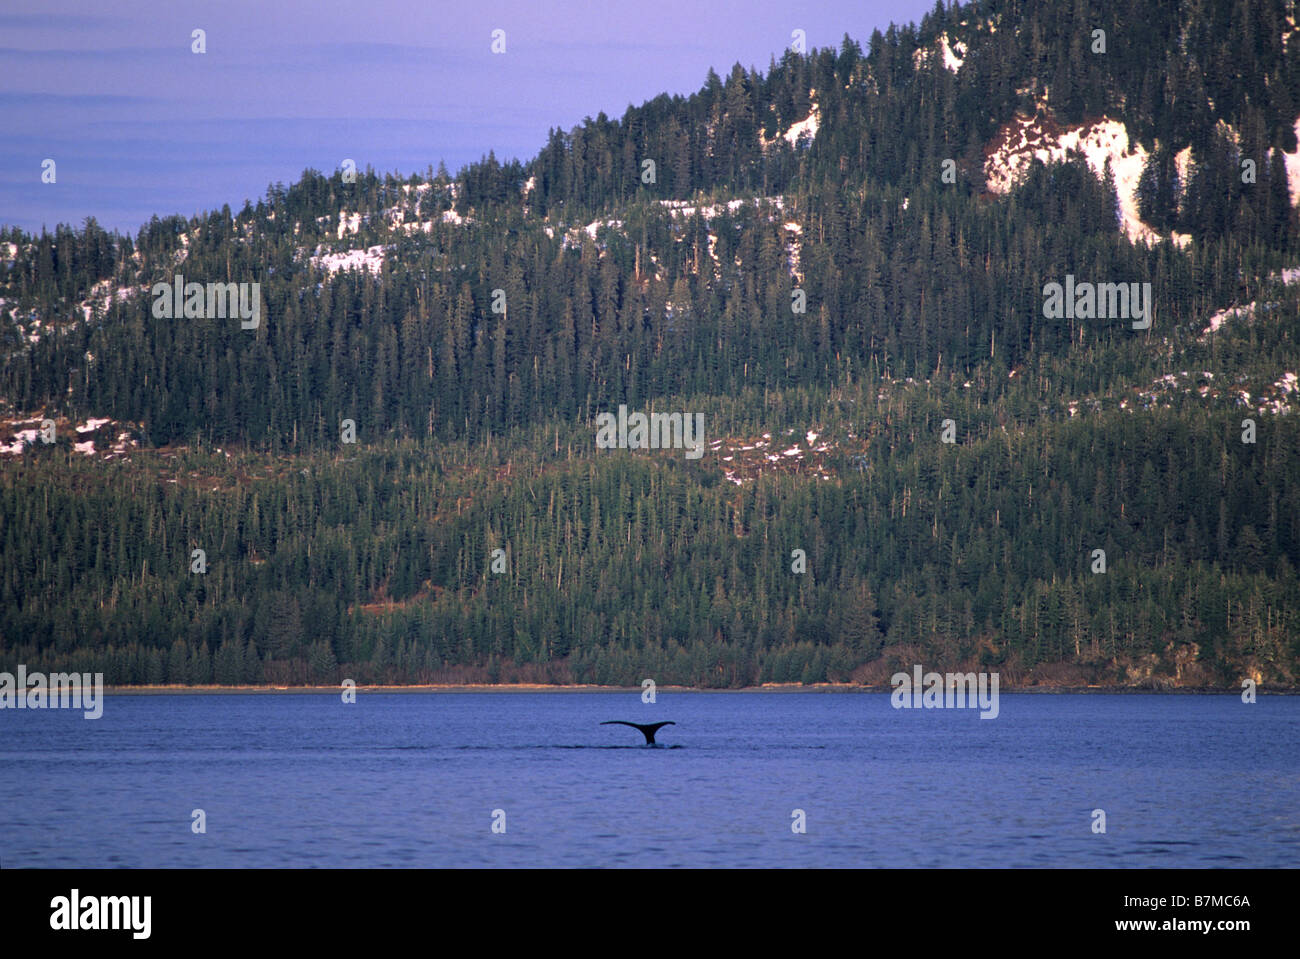 a humpback whale dives near latouche island in the prince william sound, alaska Stock Photo